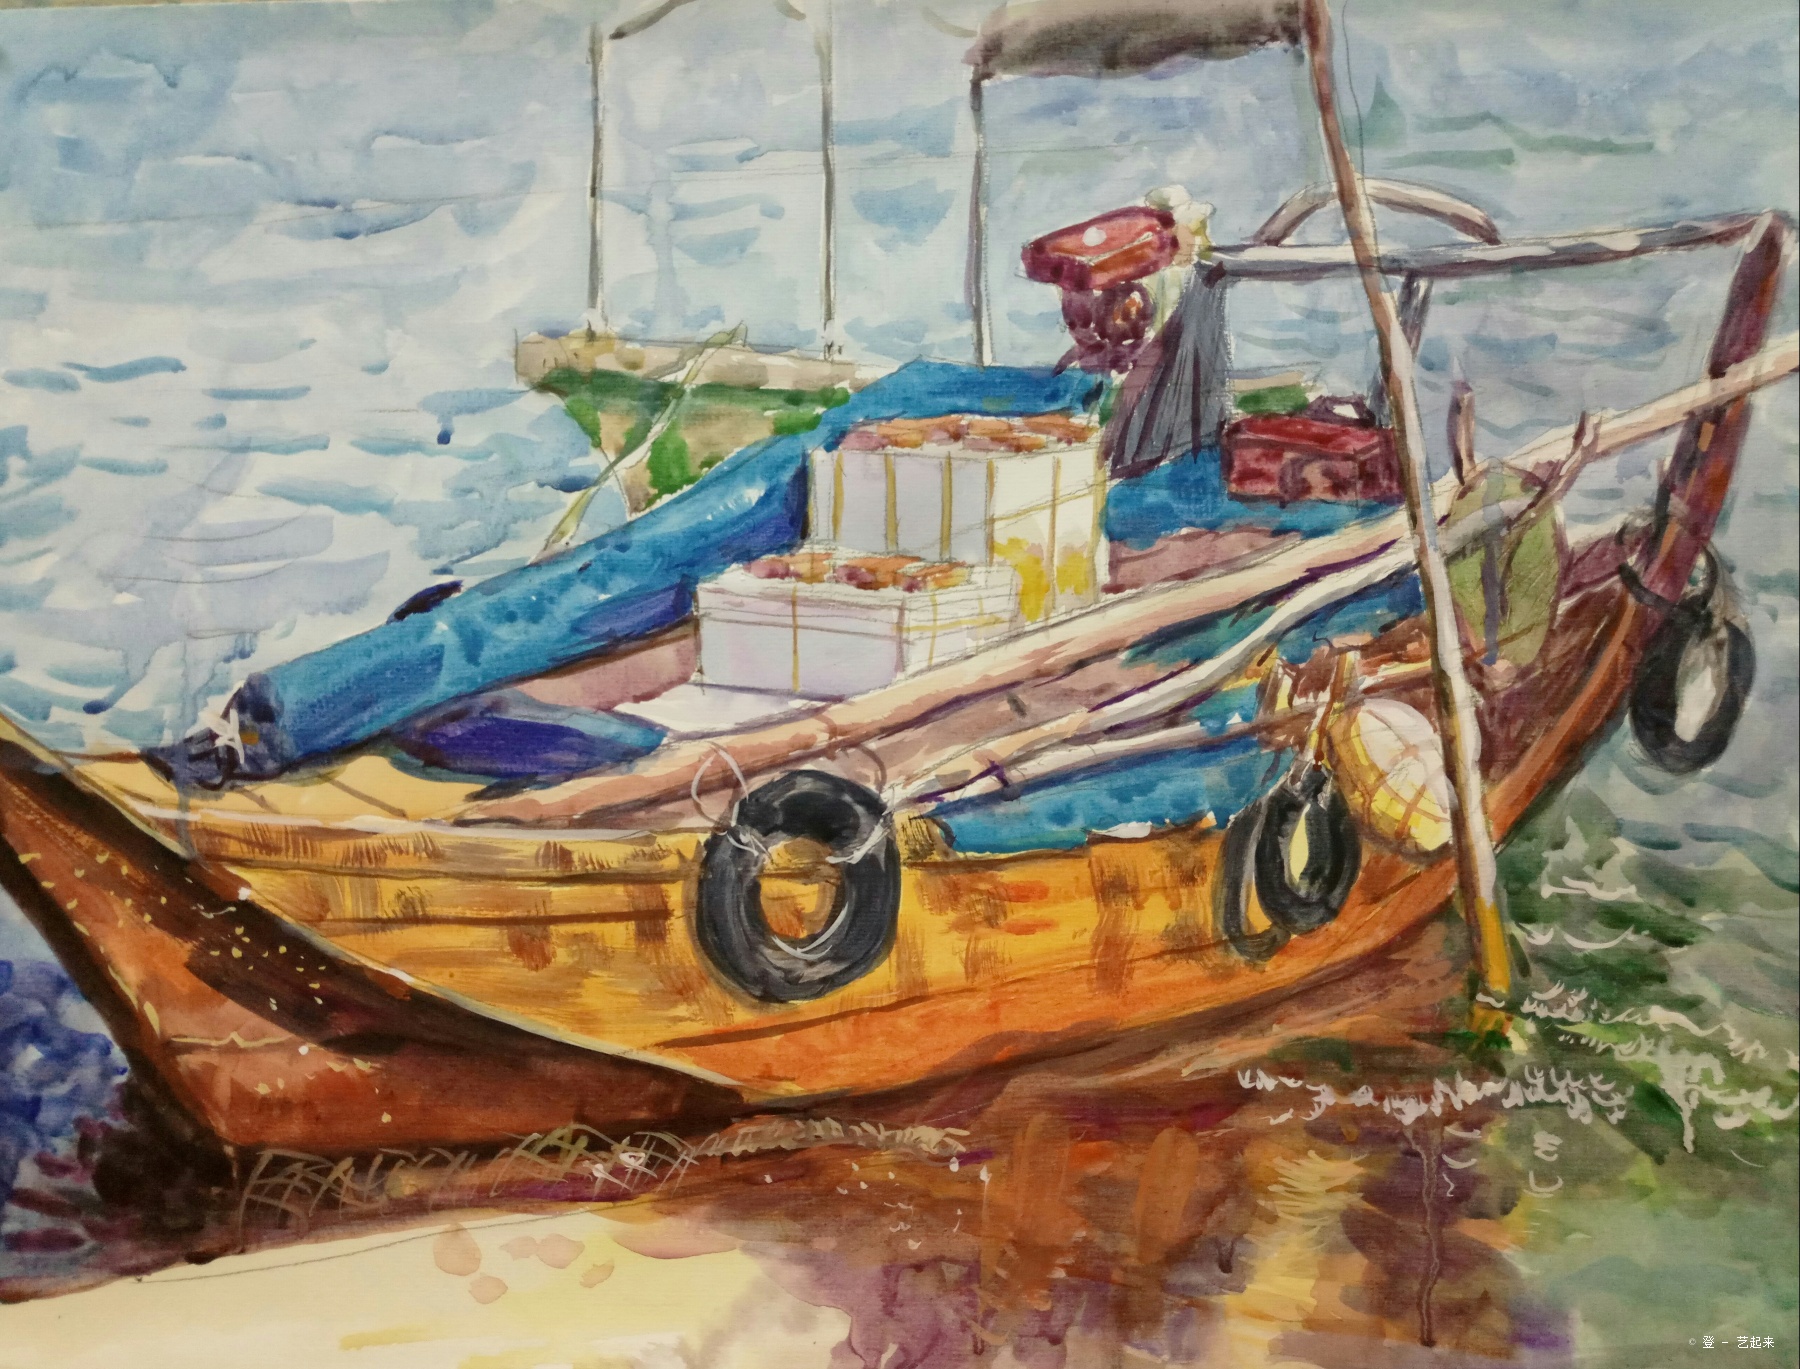 靠岸的渔船,陈忠登, 2017年纸张水彩粉画 